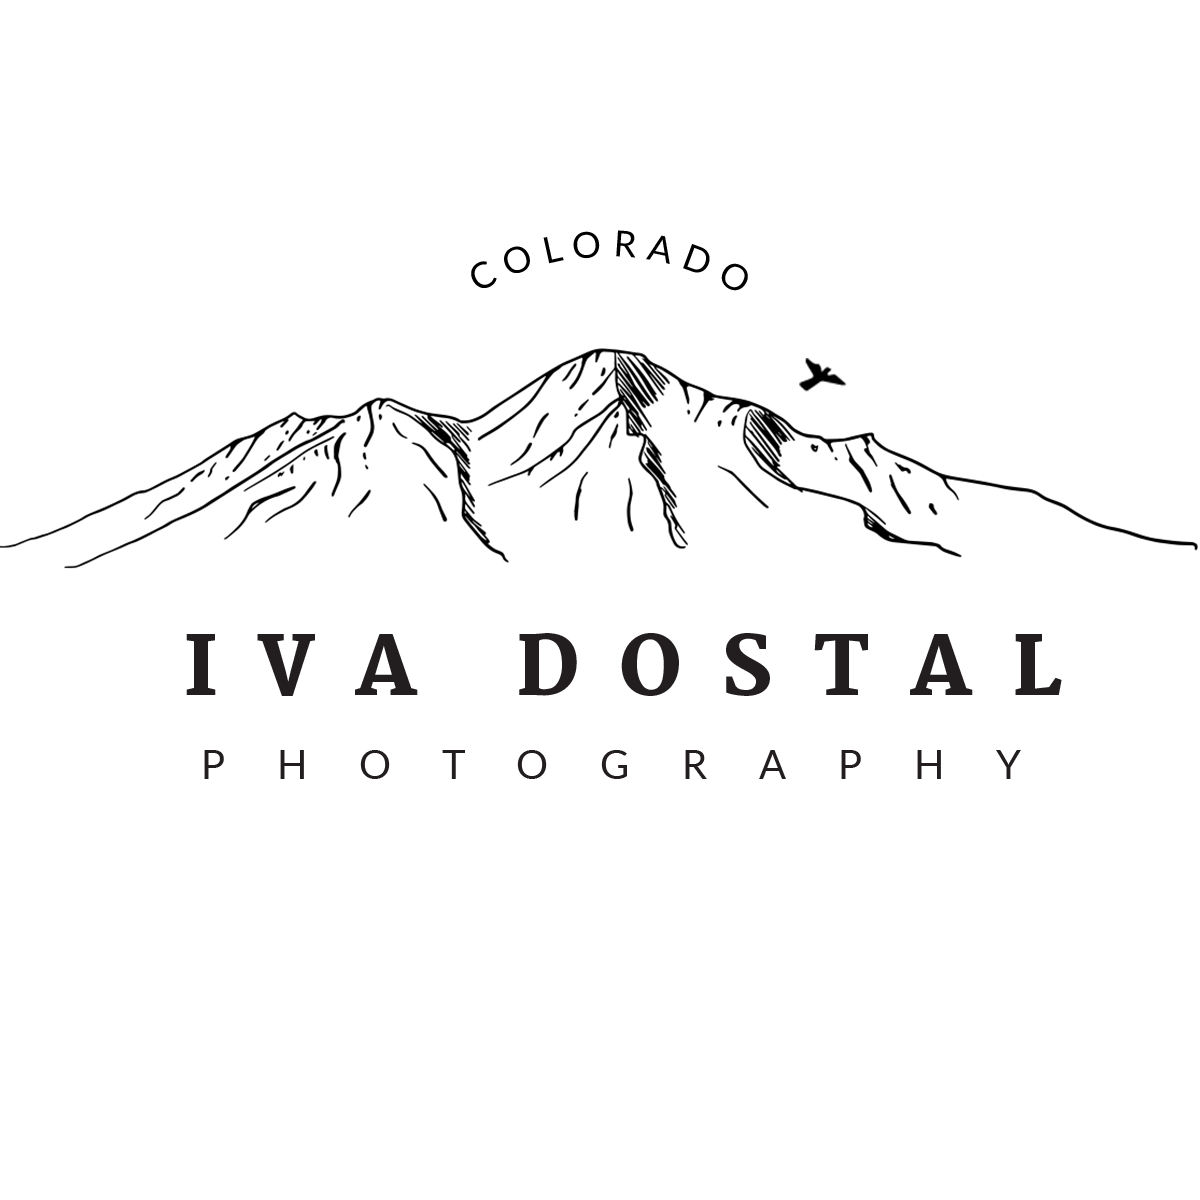 Iva Dostel Photography logo